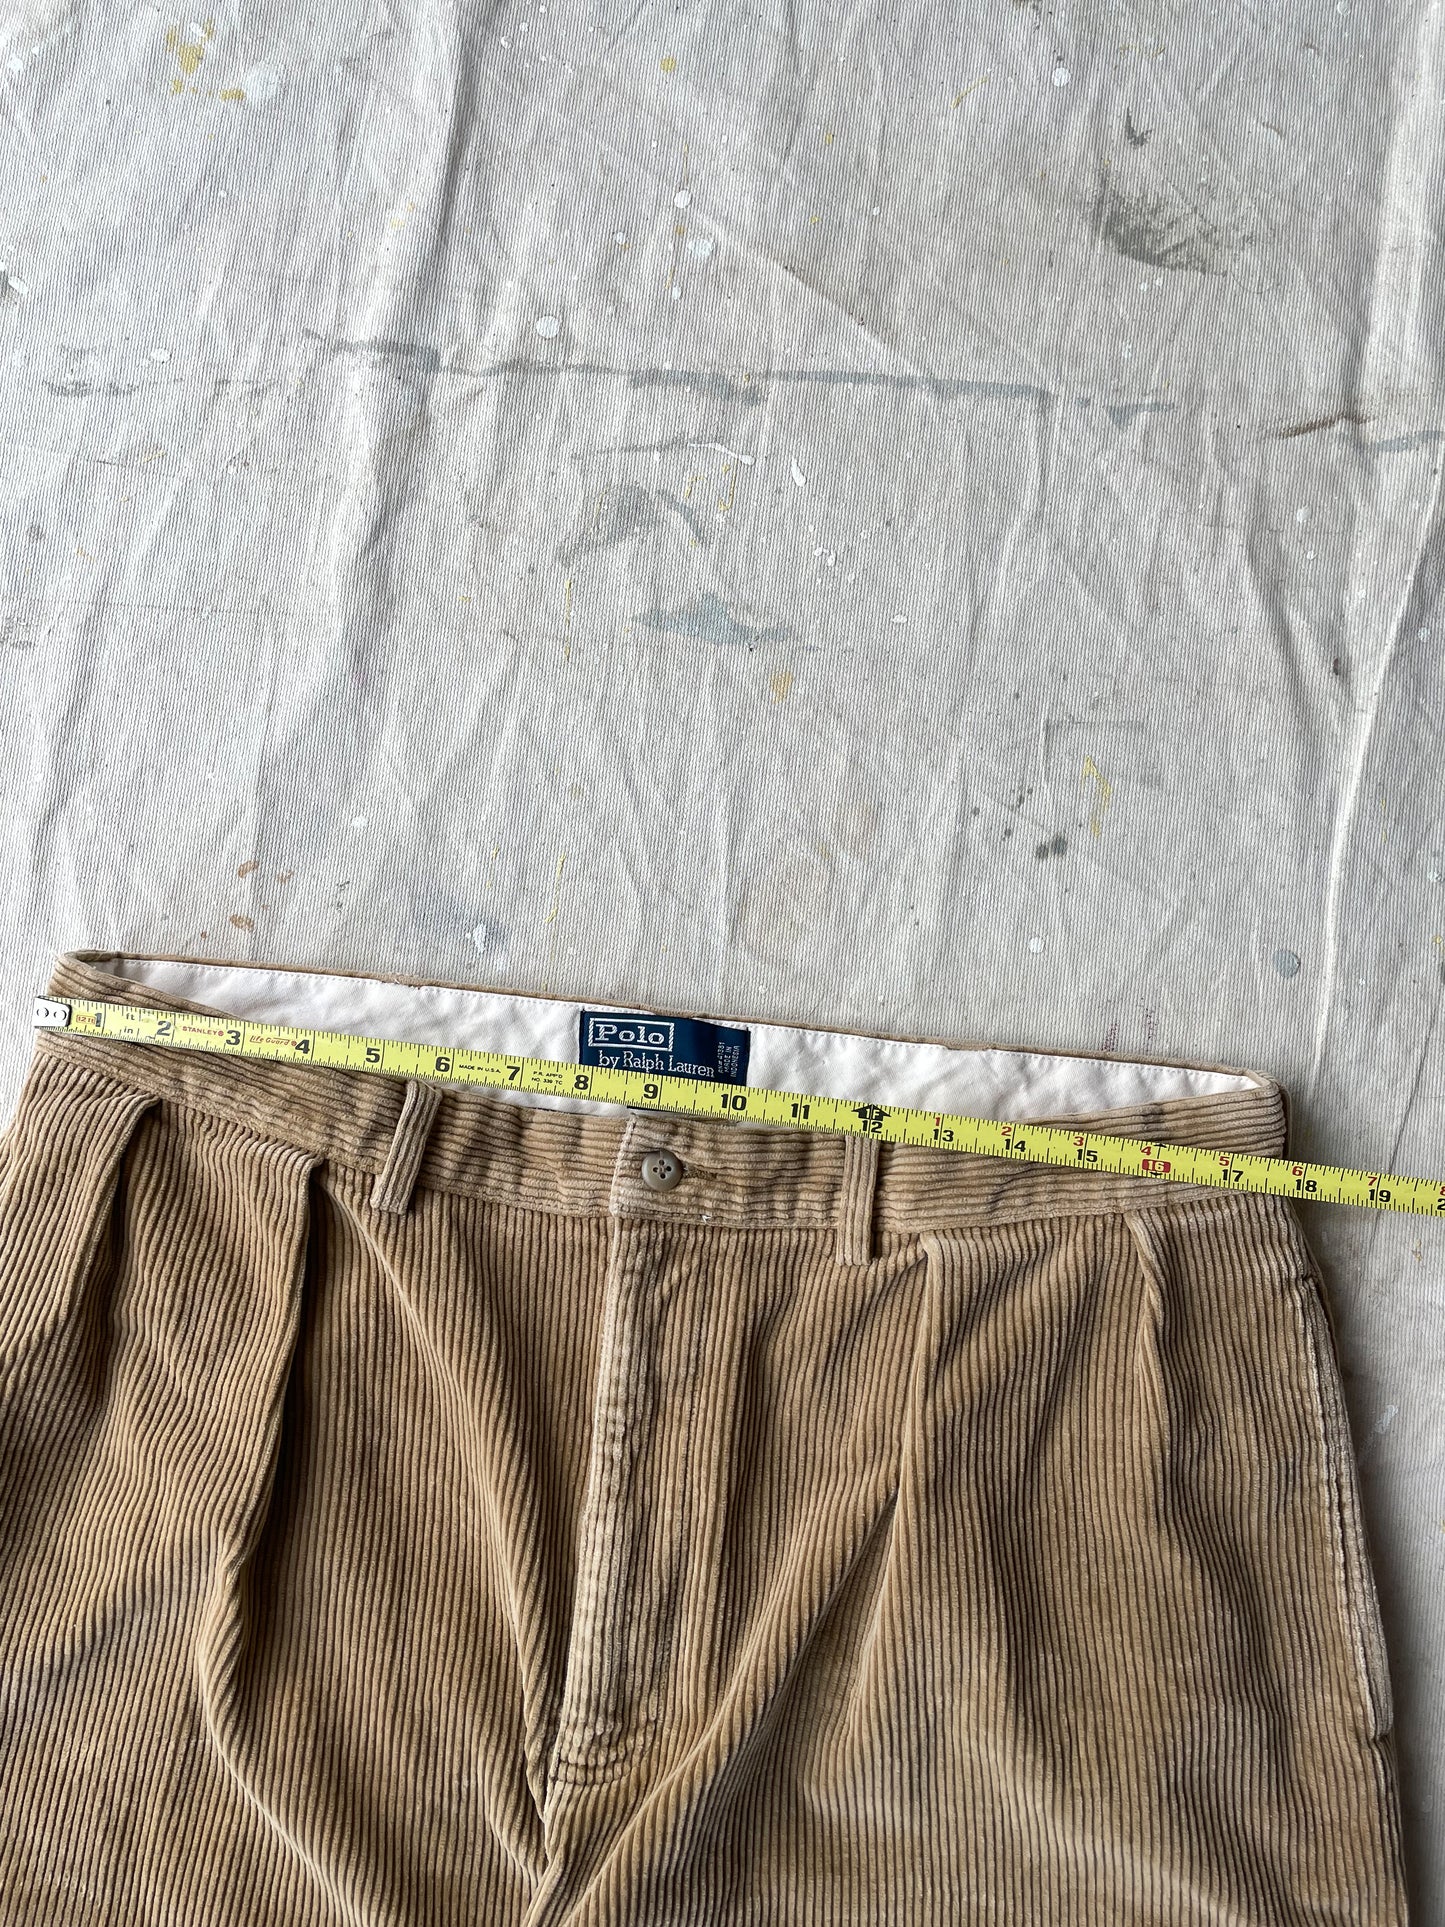 POLO RALPH LAUREN CORDUROY PANTS—TAN [36x30]